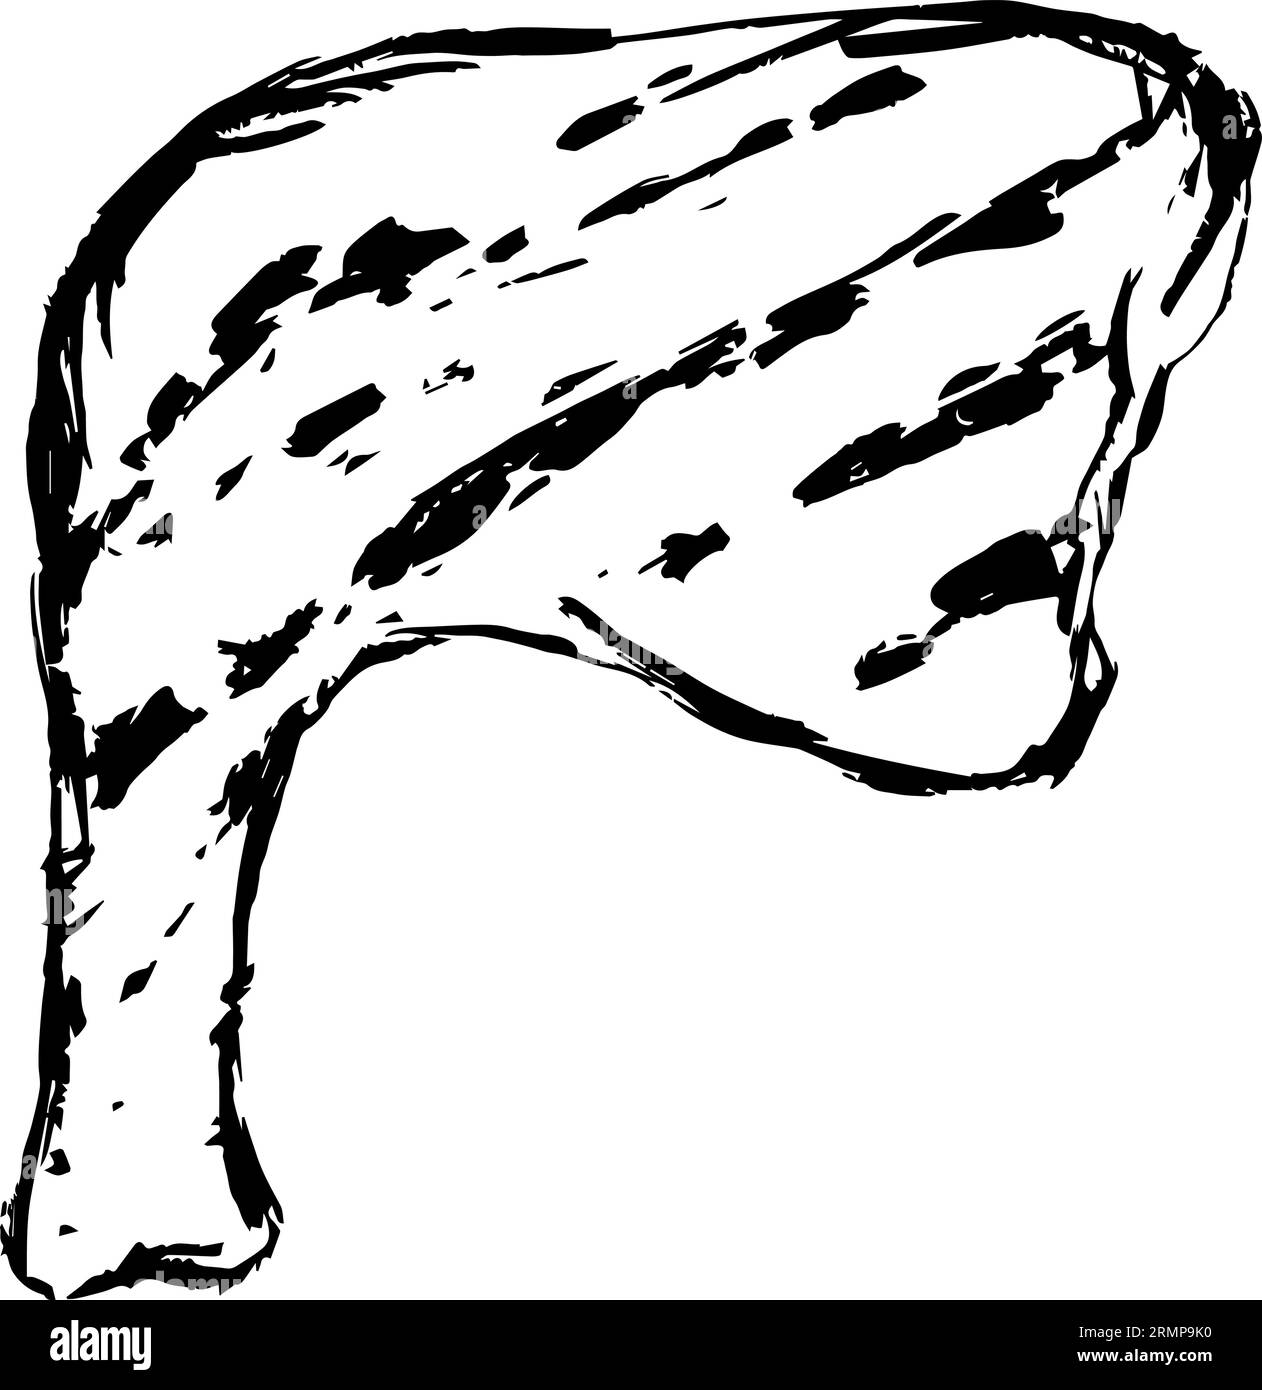 Cuisse de poulet à la viande bbq grillée Vector. Illustration dessinée à la main isolée sur fond blanc. Parfait pour le menu café, restaurant, livre de recettes, cuisine Illustration de Vecteur